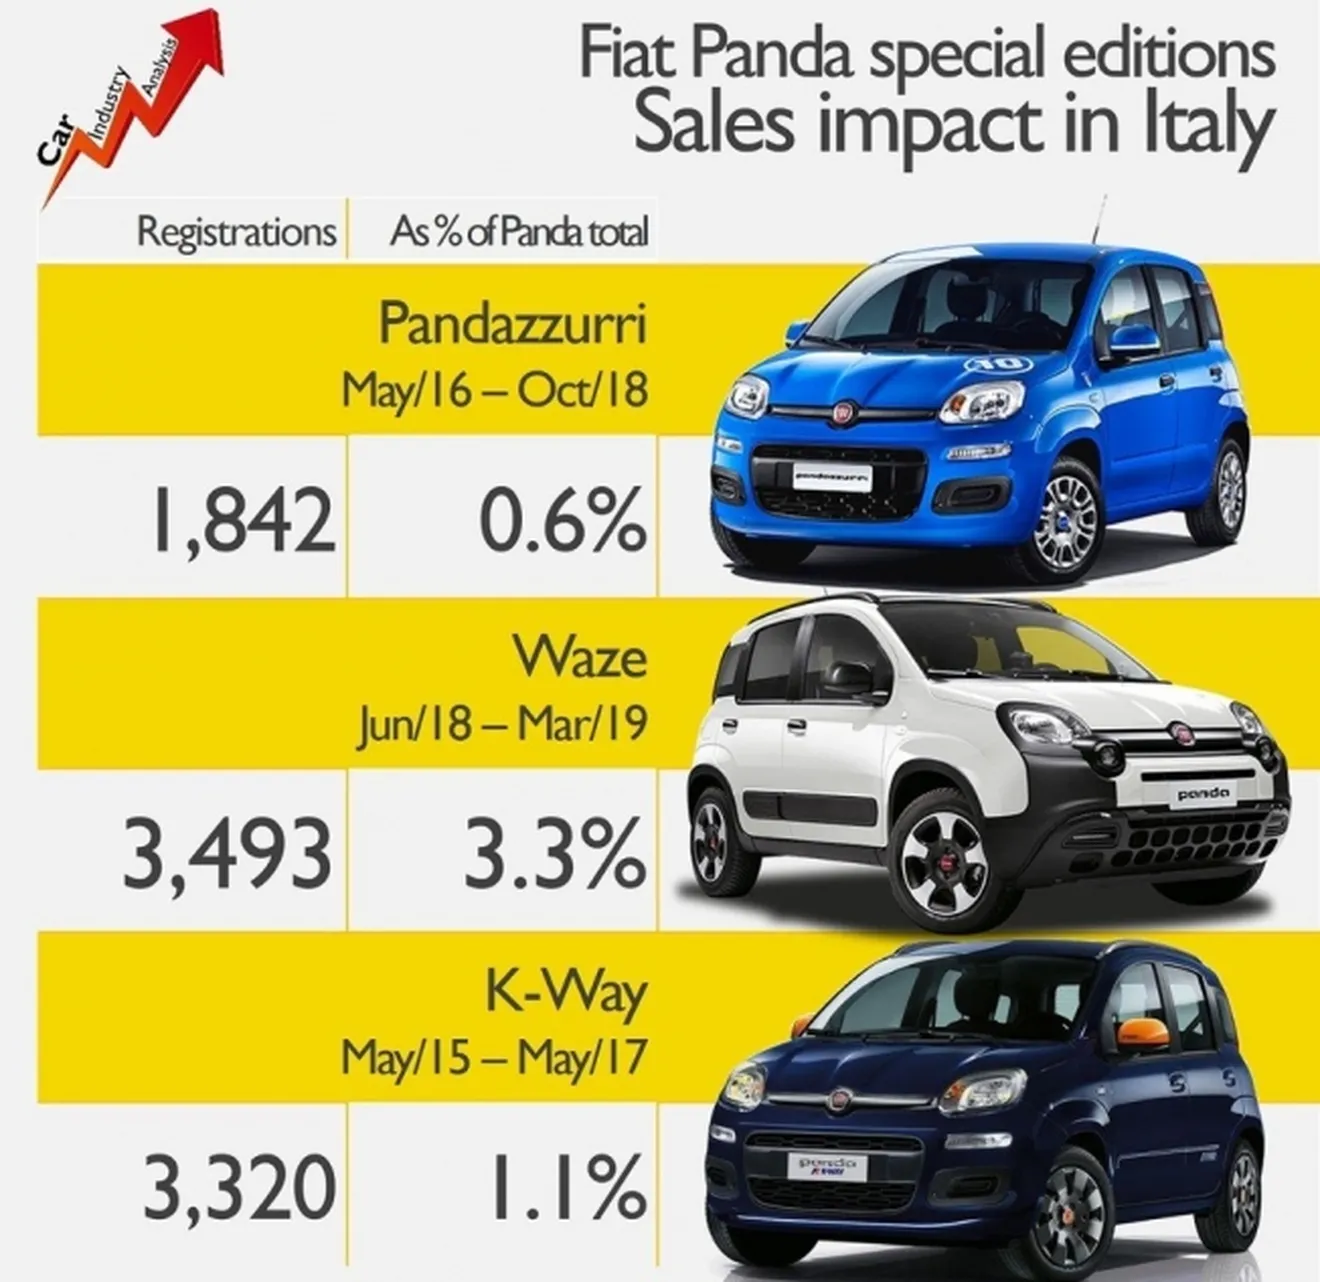 Las ediciones especiales del Fiat Panda